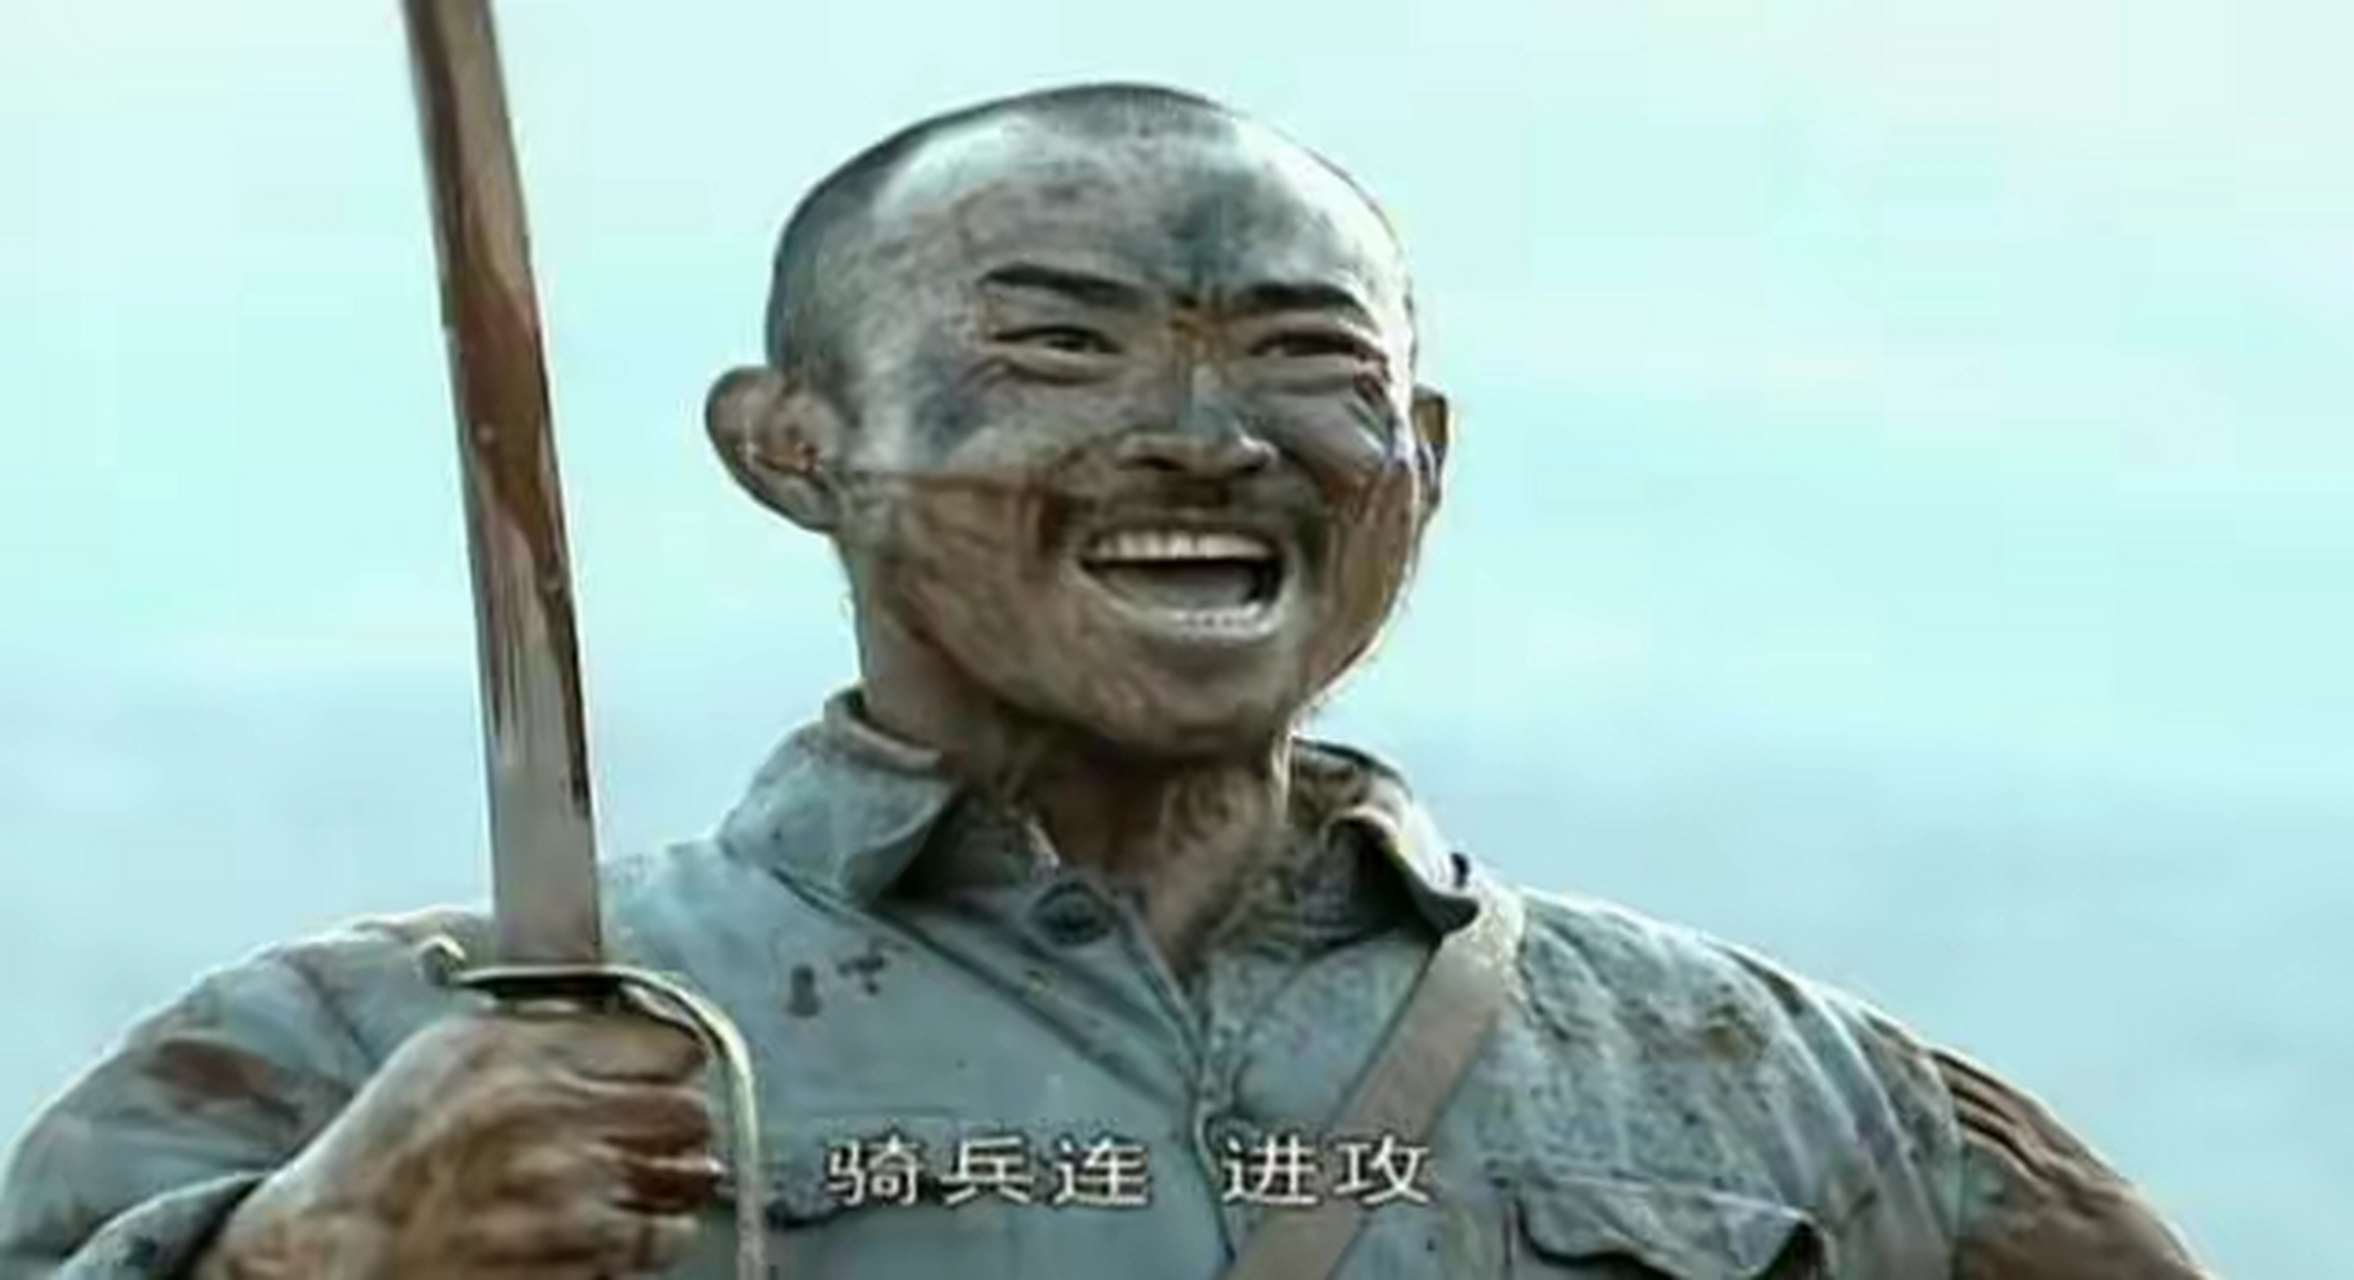 在《亮剑》剧中,骑兵连长孙德胜,以弱势之一个连队的骑兵迎击一个鬼子